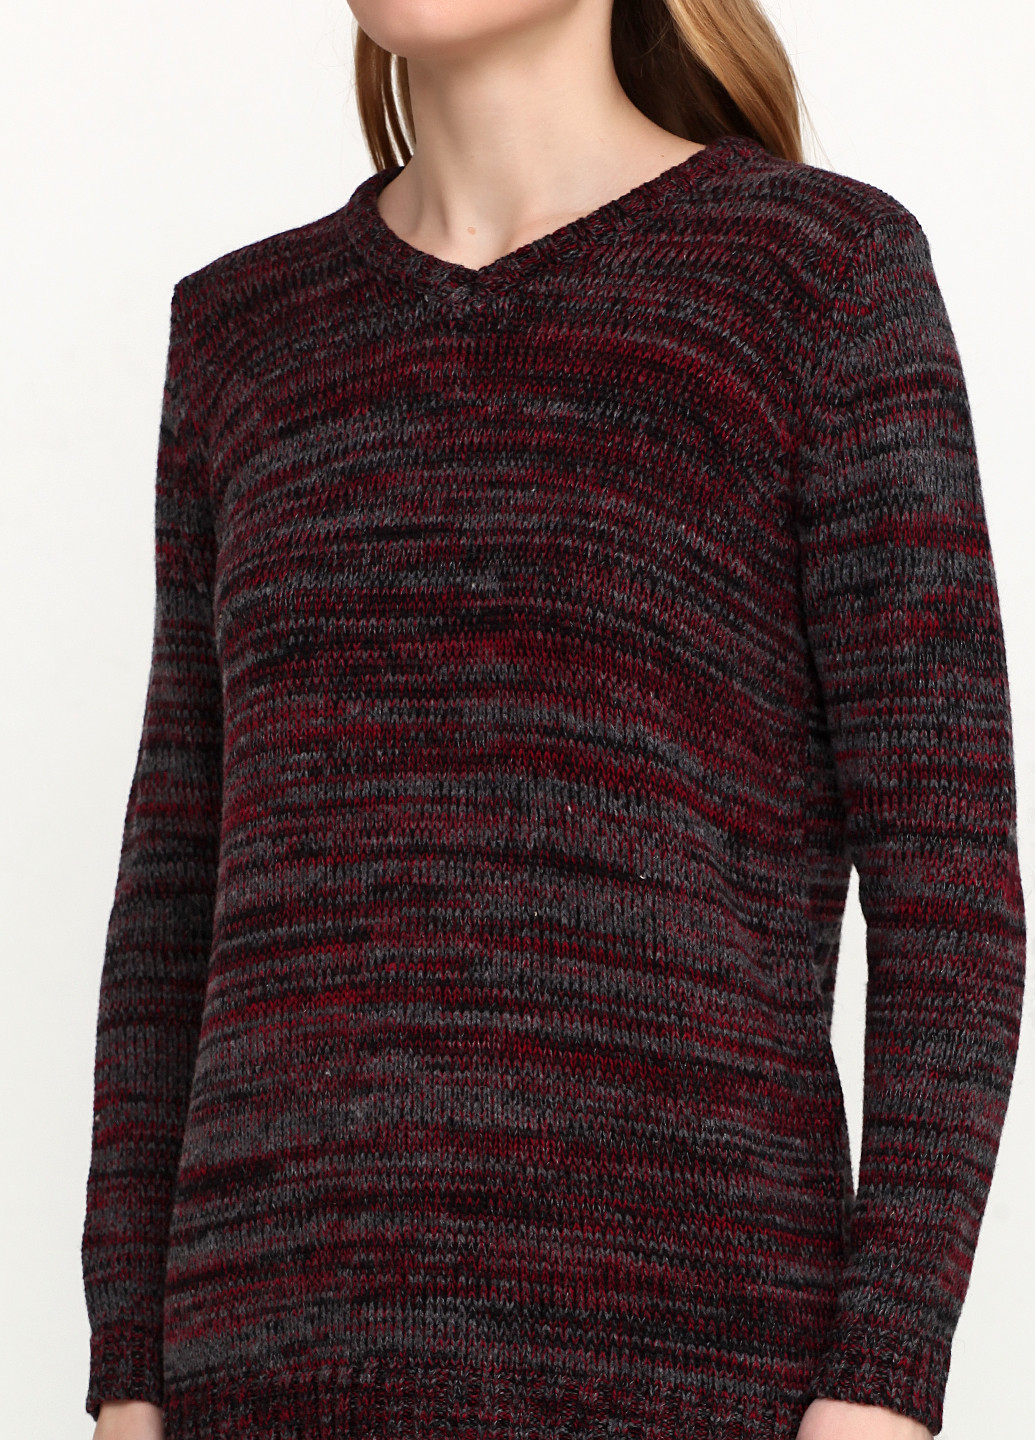 Бордовый демисезонный пуловер пуловер Long Island